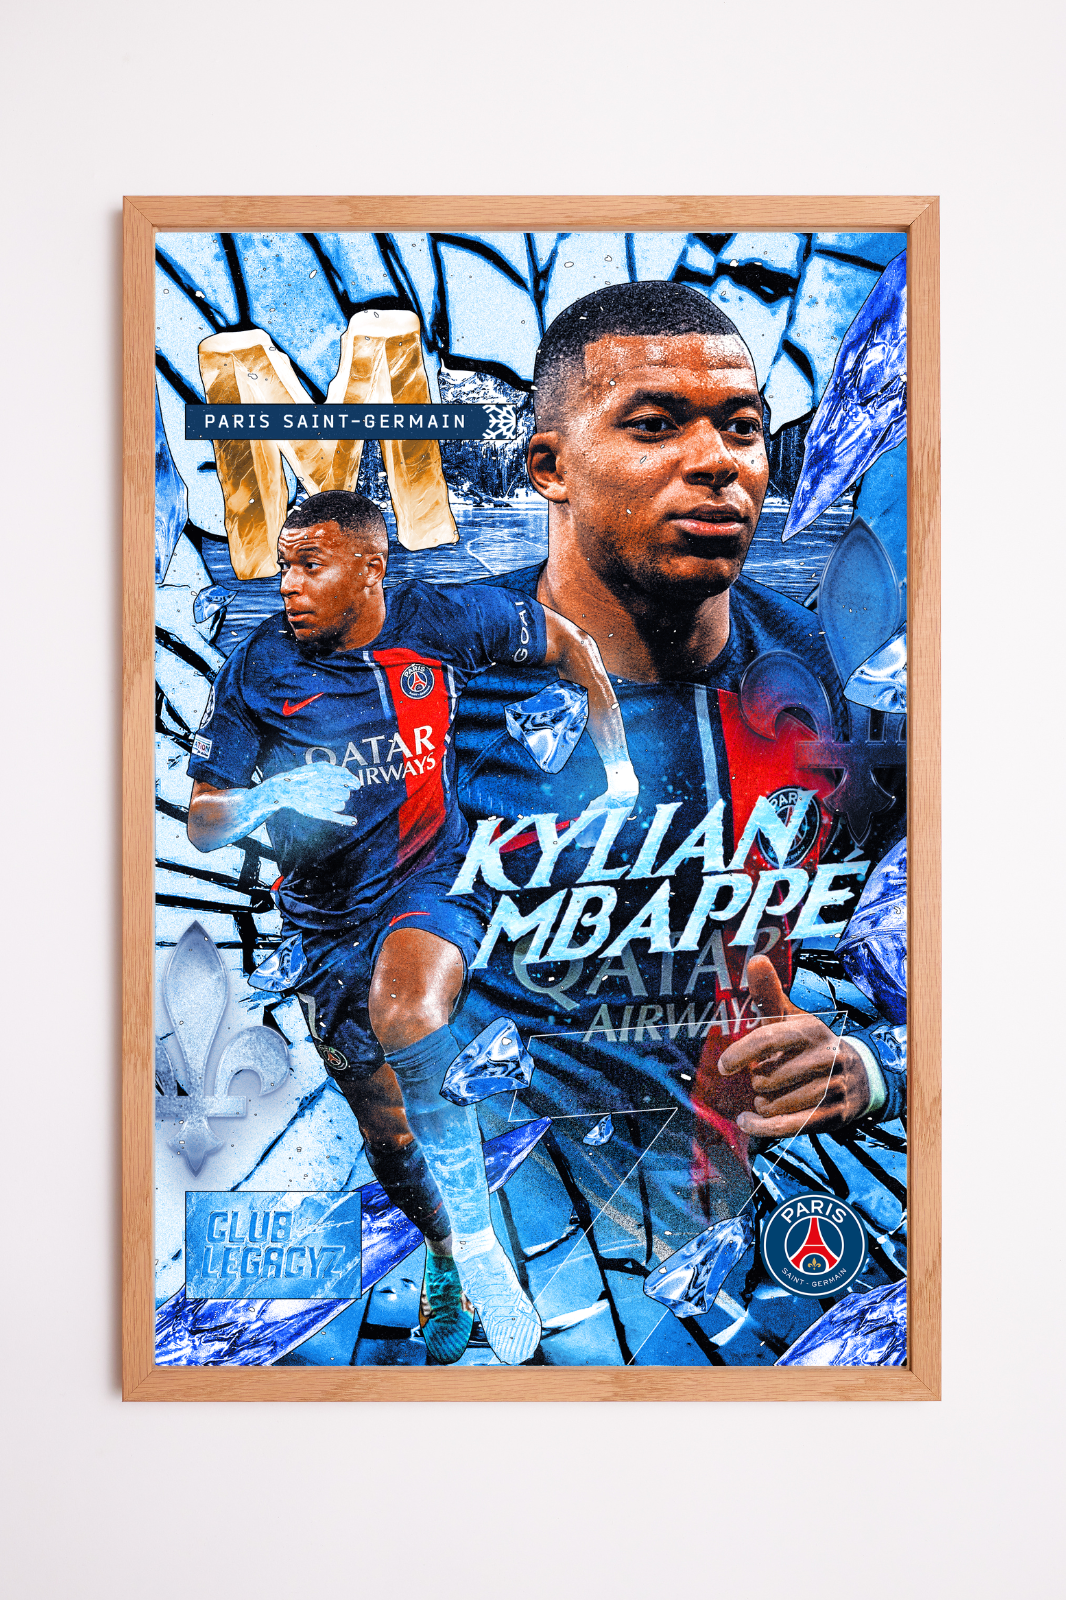 Paris Saint-Germain - Kylian Mbappé Frozen Poster limited to 100